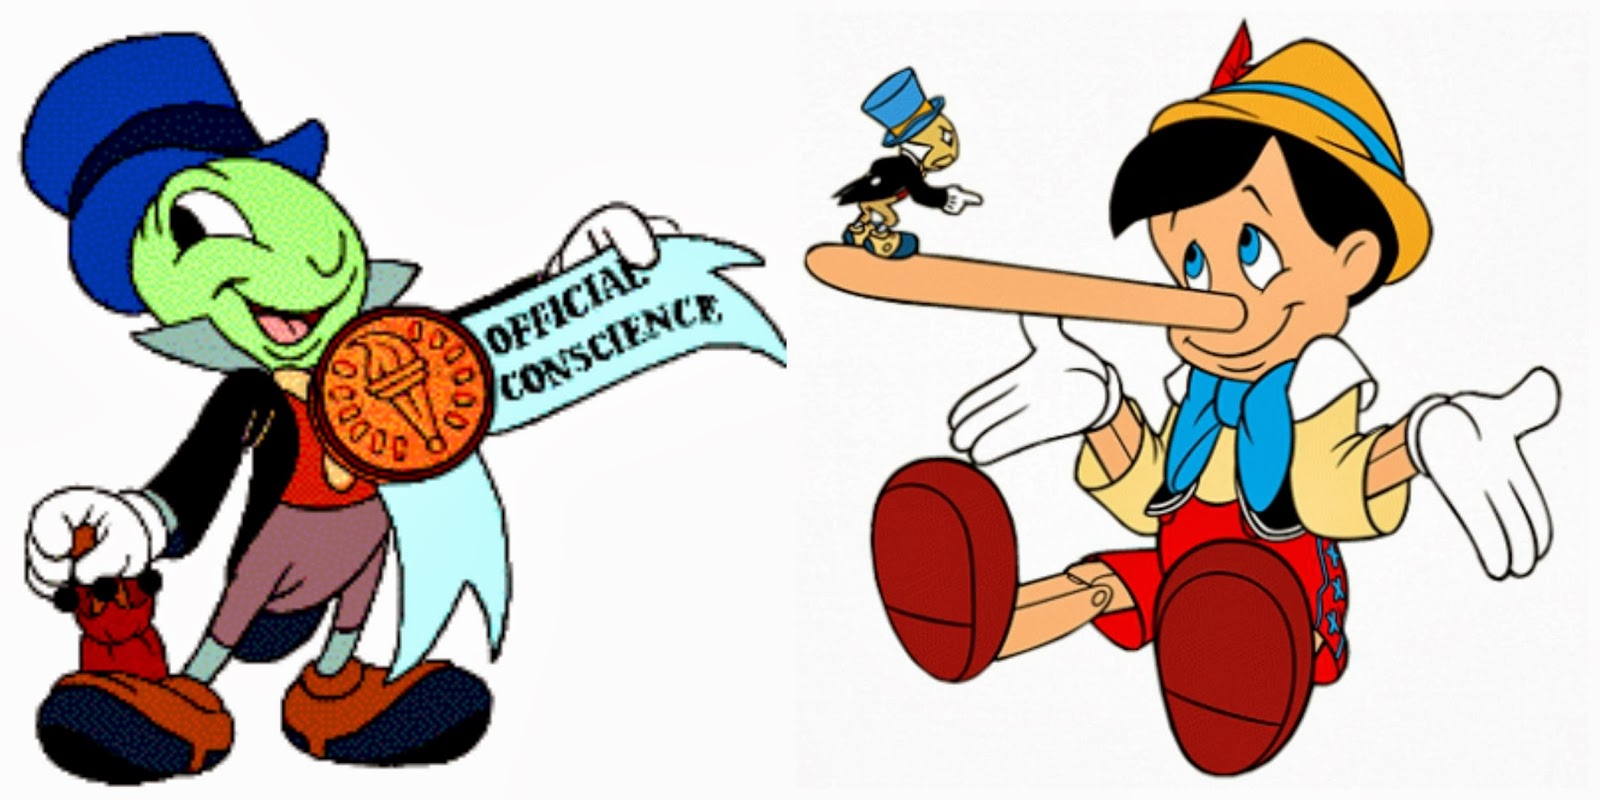 Включи sivchik буратино. Буратино и Пиноккио. Pinocchio and Jiminy Cricket. Литературный герой Пиноккио. Пиноккио Джимини крикет.